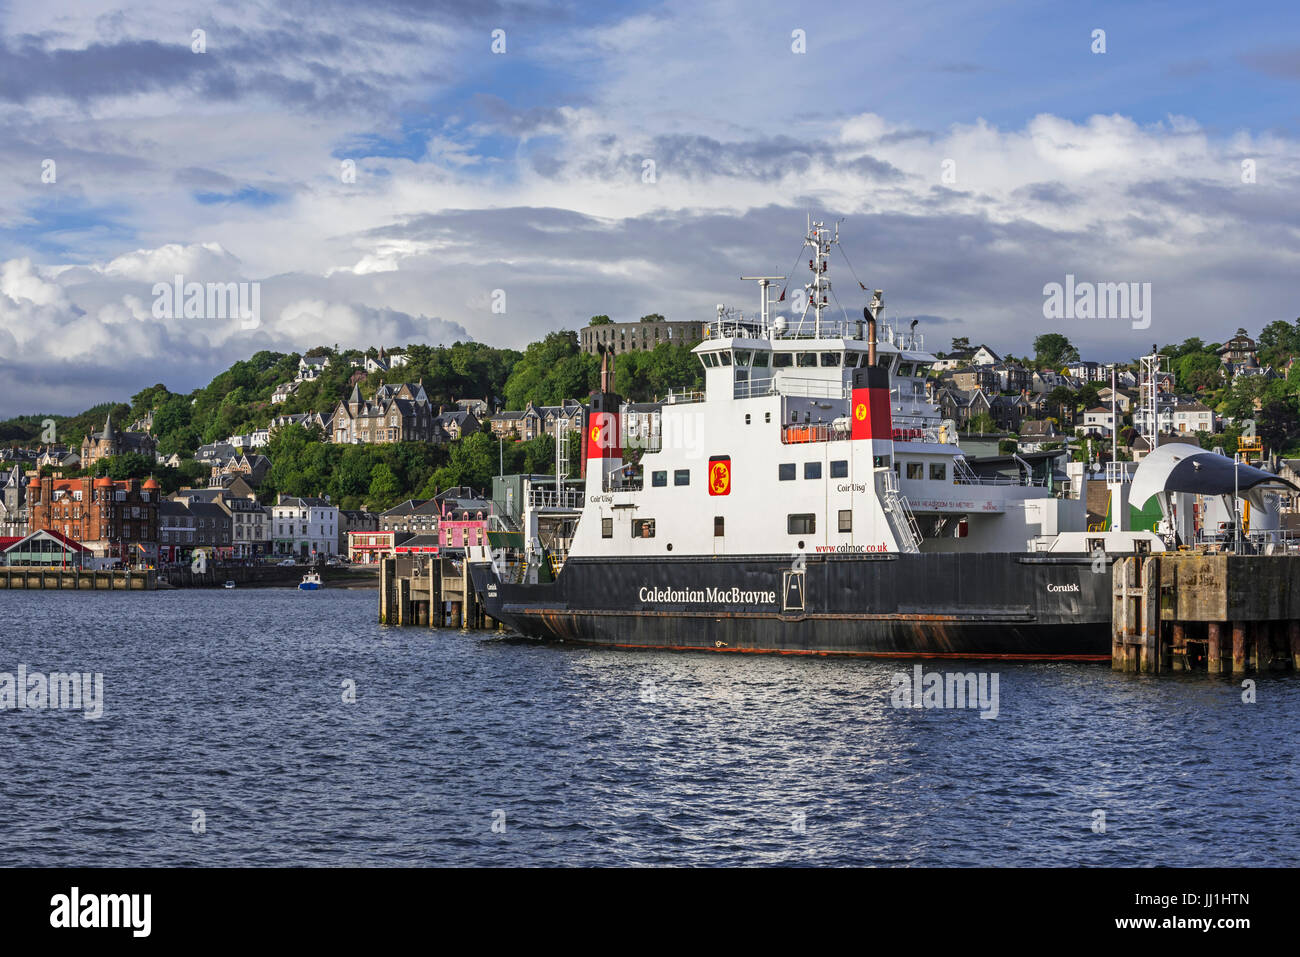 MV Coruisk traghetto da Caledonian MacBrayne ormeggiata nel porto di Oban, Argyll and Bute, Scotland, Regno Unito Foto Stock